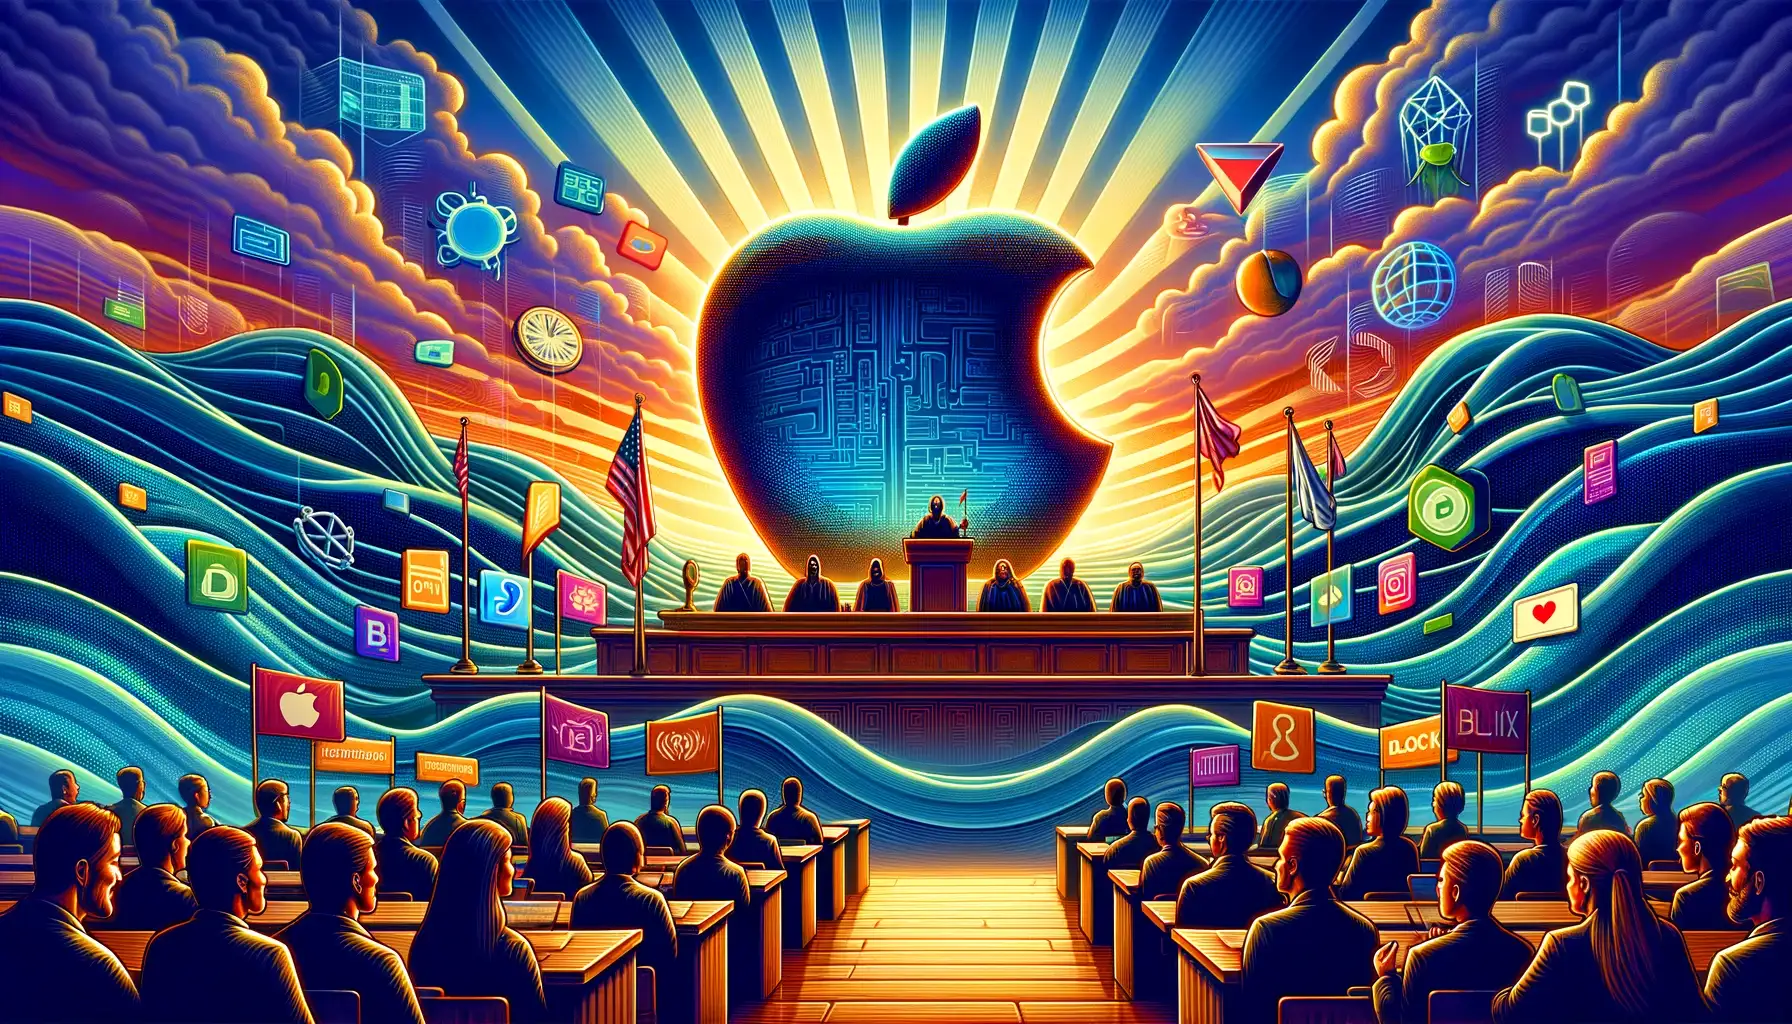 Apple'ın Antitröst Mücadelesi: Wall Street'in Bakış Açısı ve Ödeme Şirketlerine Potansiyel Etkiler